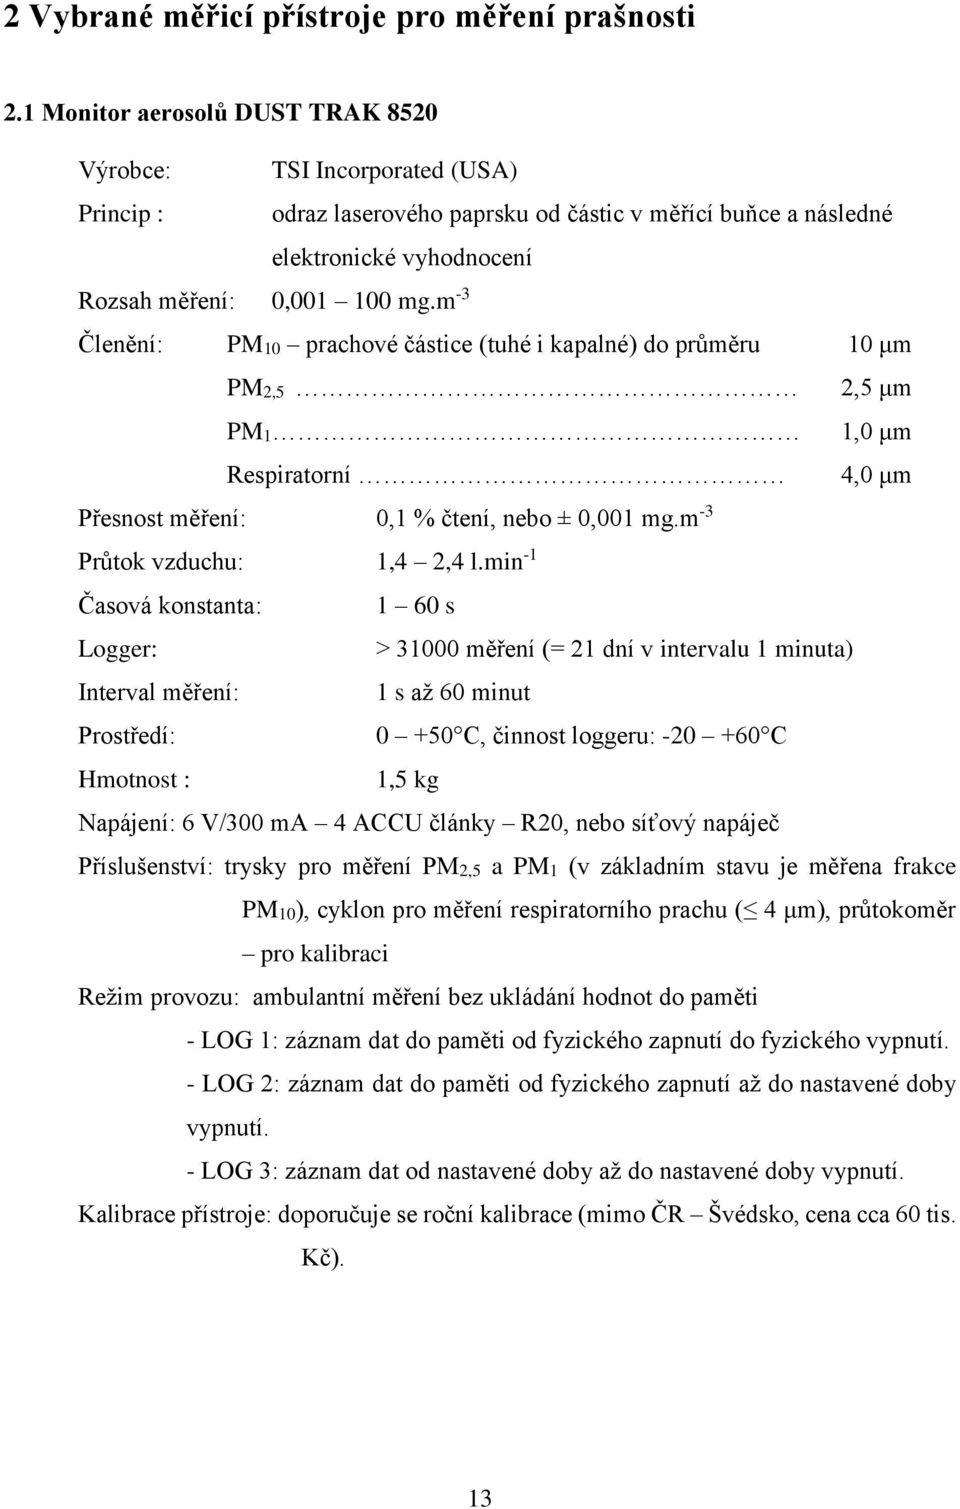 m -3 Členění: PM10 prachové částice (tuhé i kapalné) do průměru 10 μm PM2,5 2,5 μm PM1 1,0 μm Respiratorní 4,0 μm Přesnost měření: 0,1 % čtení, nebo ± 0,001 mg.m -3 Průtok vzduchu: 1,4 2,4 l.